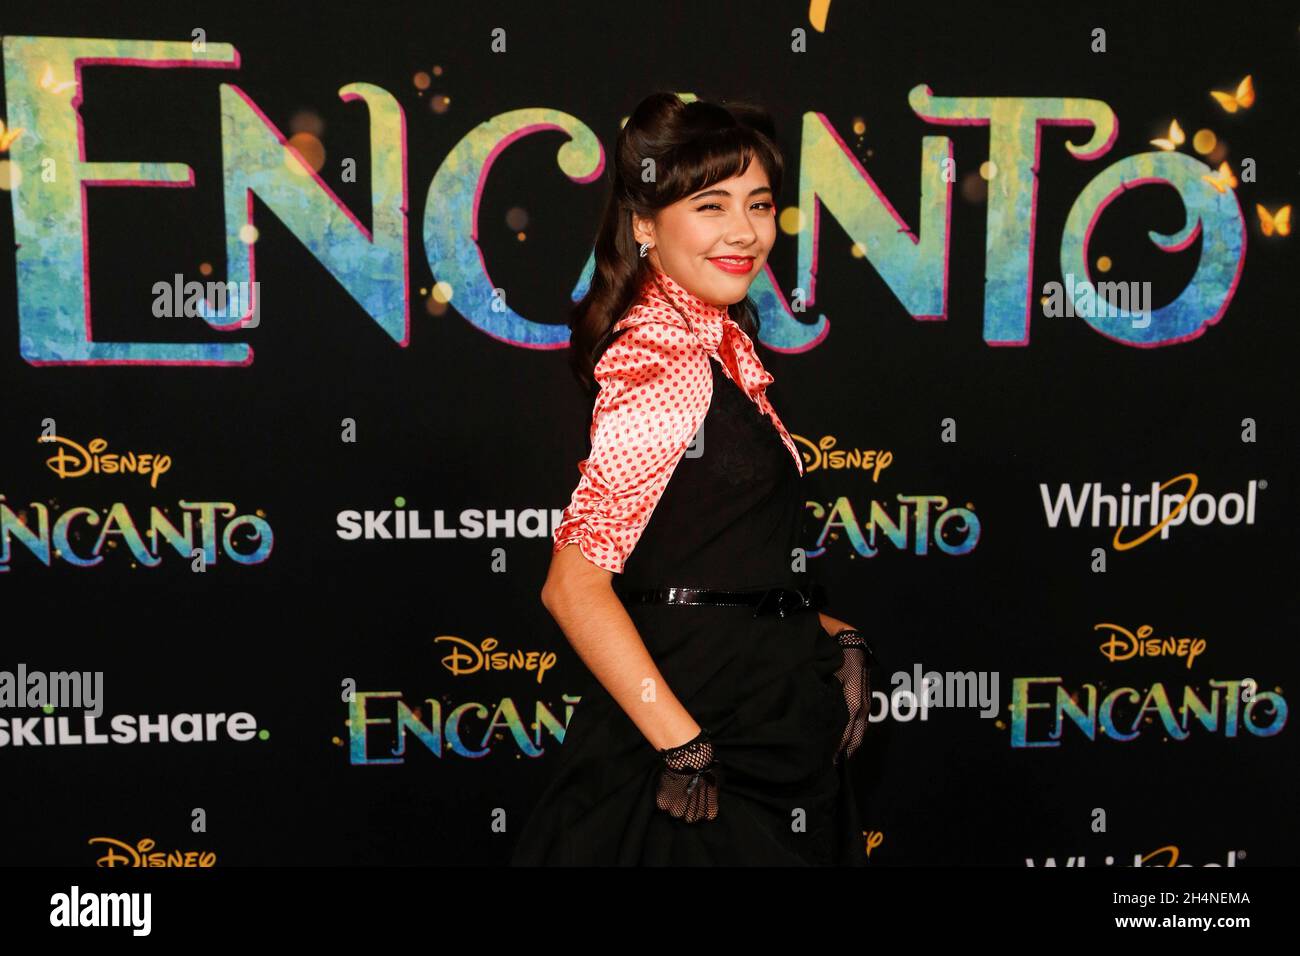 Xochitl Gomez attends the premiere for the film 'Encanto' at El Capitan Theatre in Los Angeles, California, U.S., November 3, 2021. REUTERS/Ringo Chiu Stock Photo